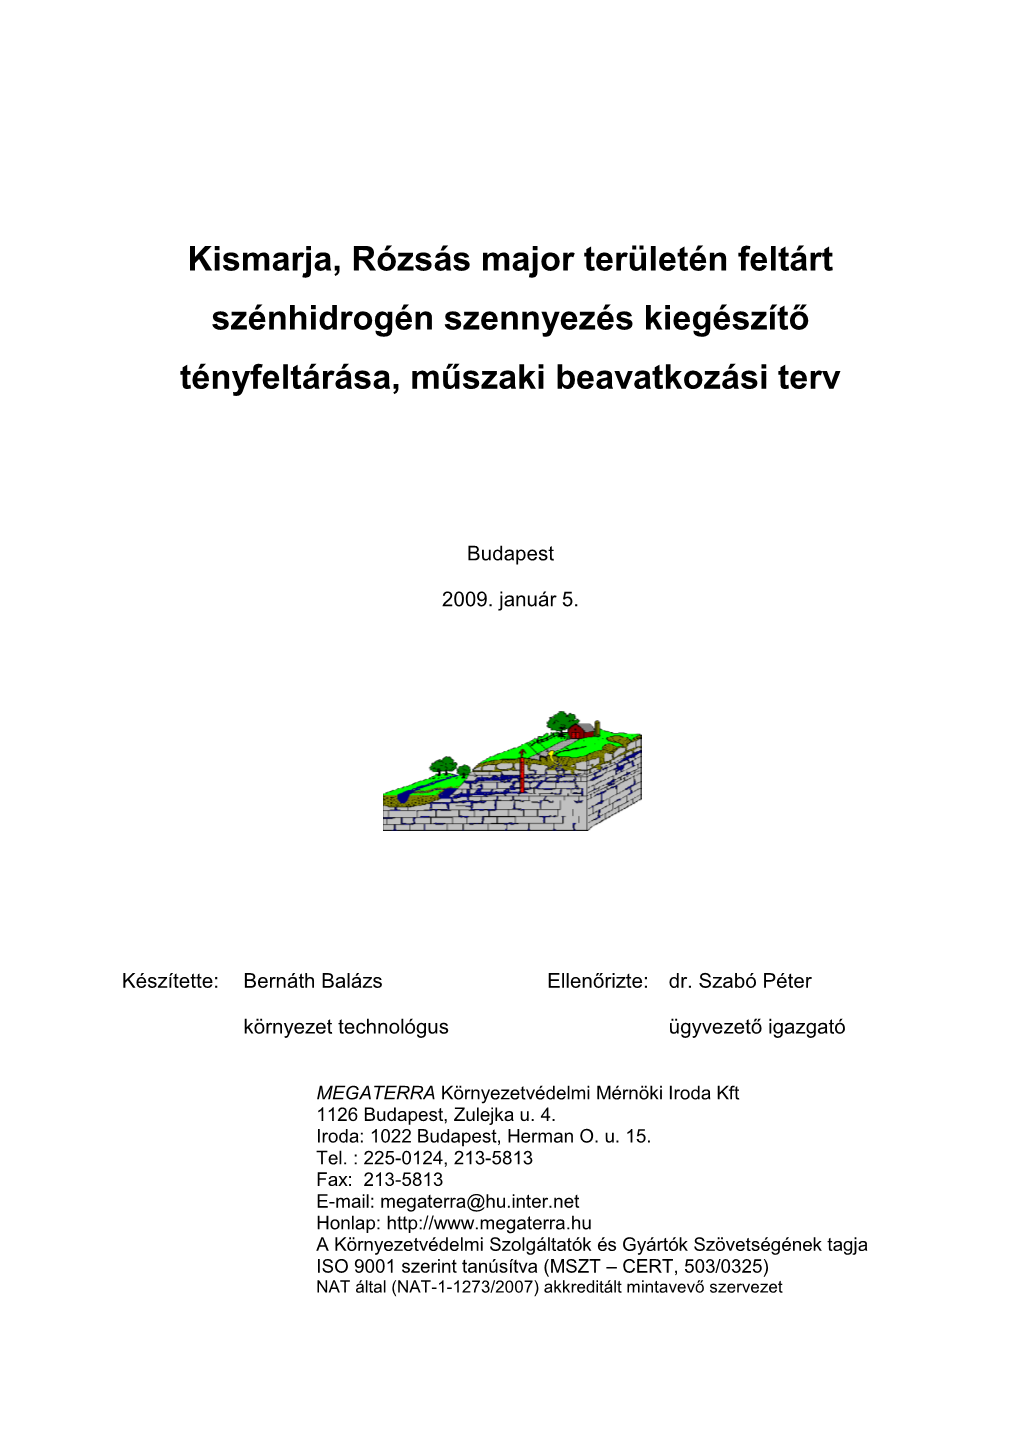 Kismarja, Rózsás Major Területén Feltárt Szénhidrogén Szennyezés Kiegészítő Tényfeltárása, Műszaki Beavatkozási Terv